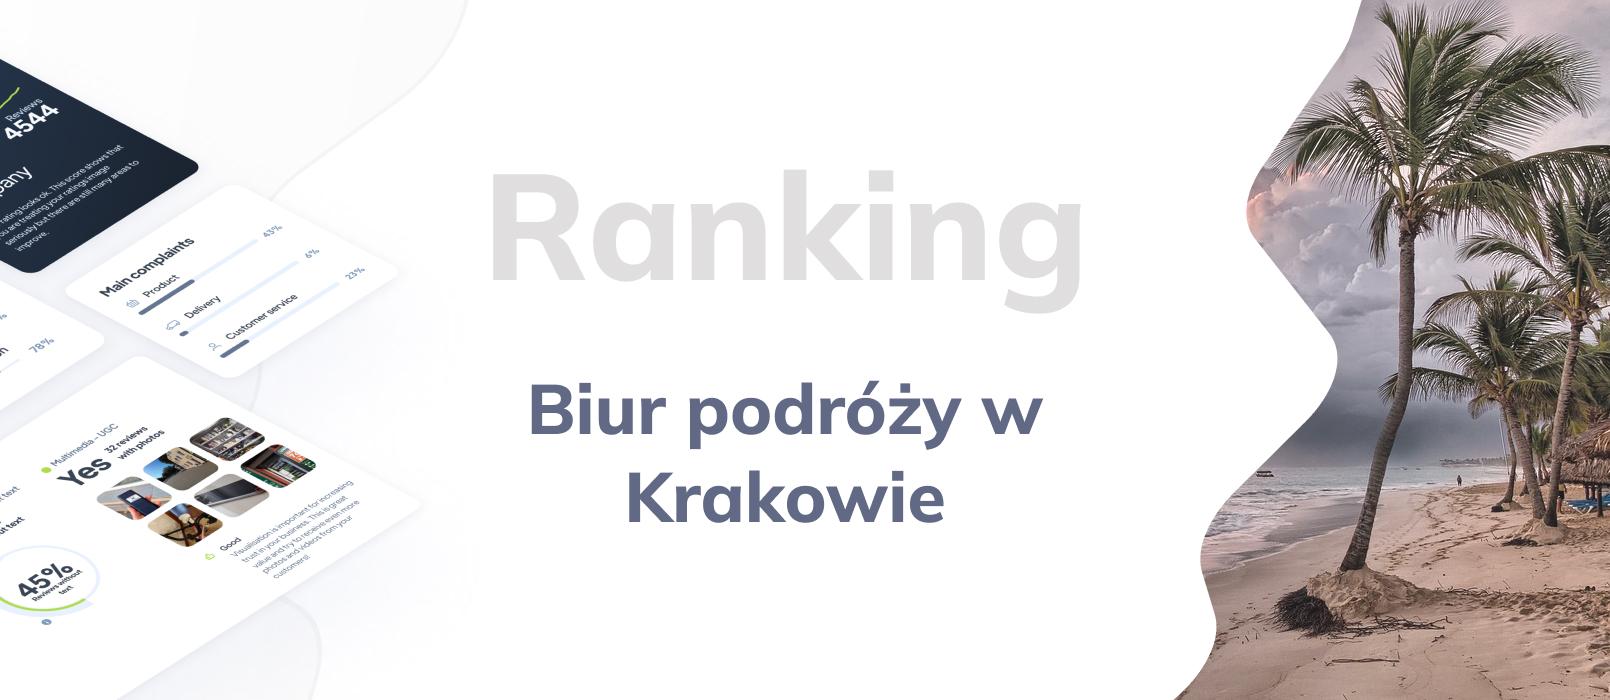 Biura podróży w Krakowie - ranking TOP 10